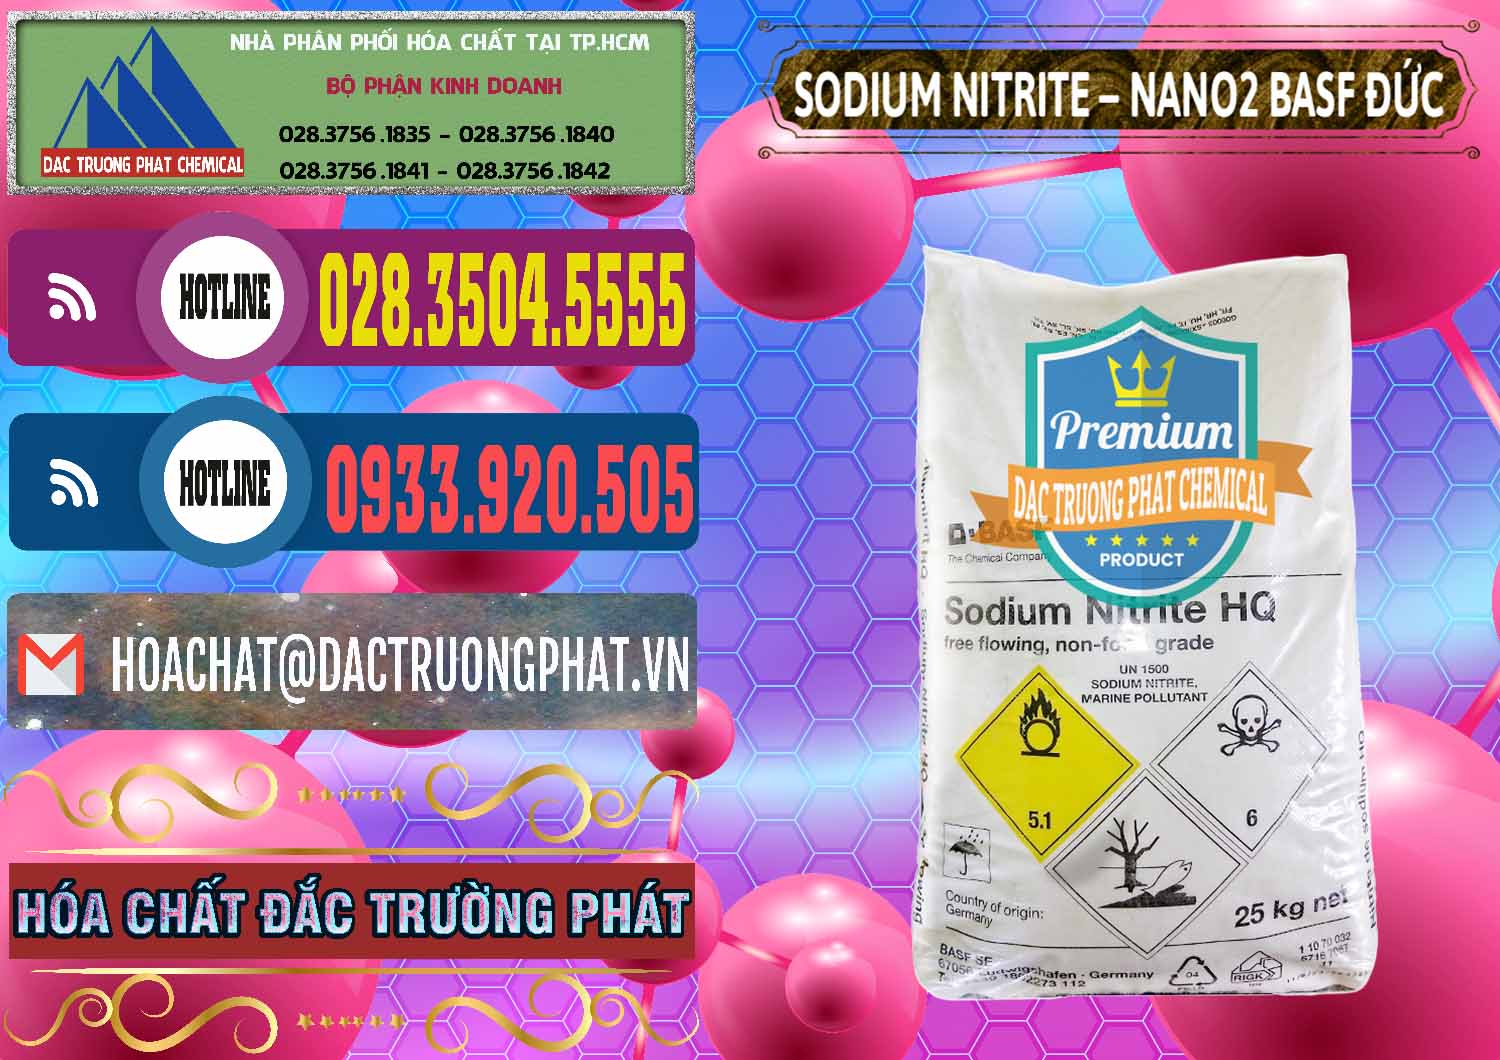 Chuyên cung ứng và bán Sodium Nitrite - NANO2 Đức BASF Germany - 0148 - Nơi nhập khẩu và cung cấp hóa chất tại TP.HCM - muabanhoachat.com.vn